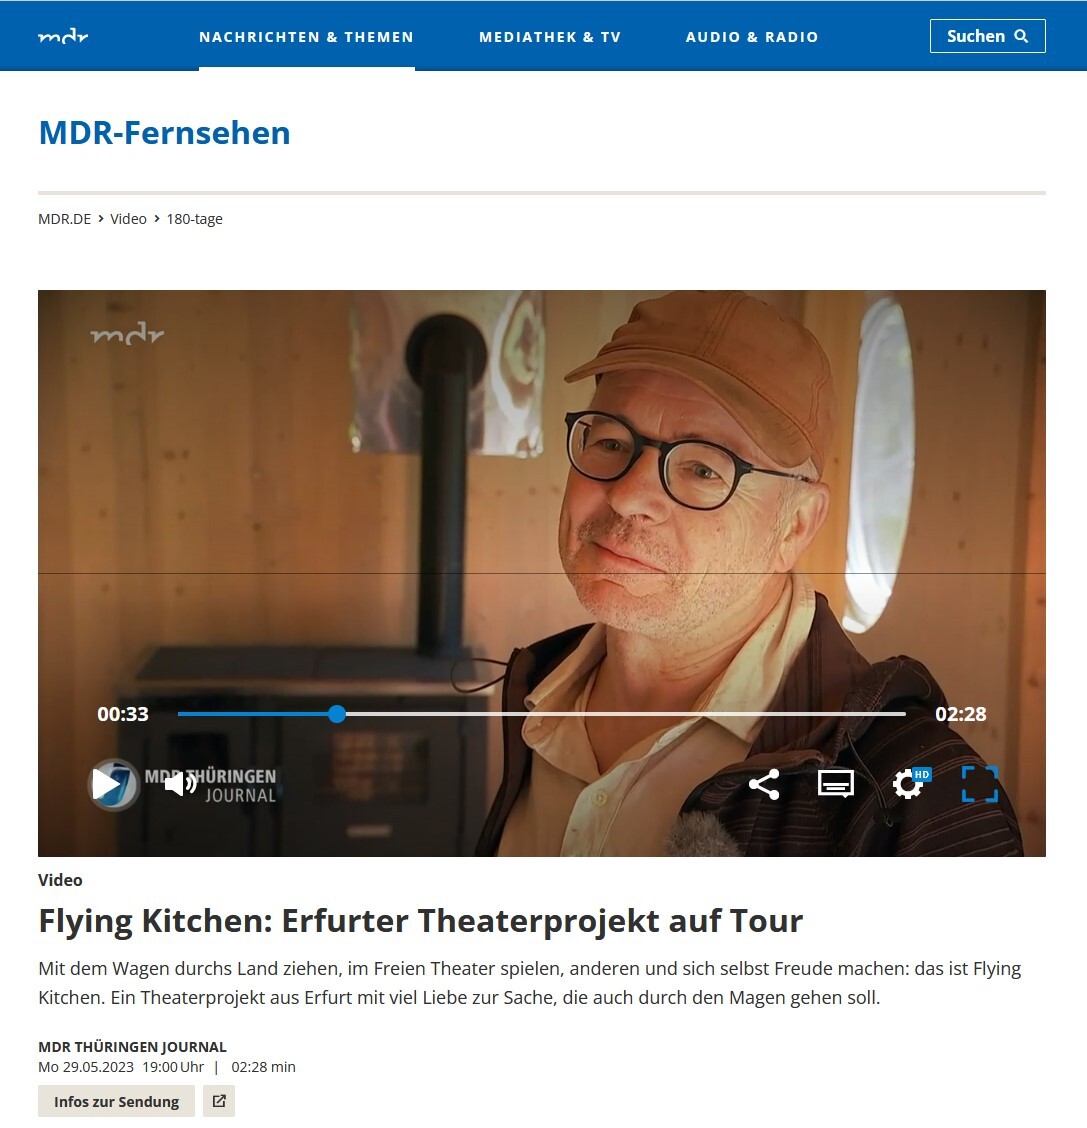 MDR: Flying Kitchen: Erfurter Theaterprojekt auf Tour